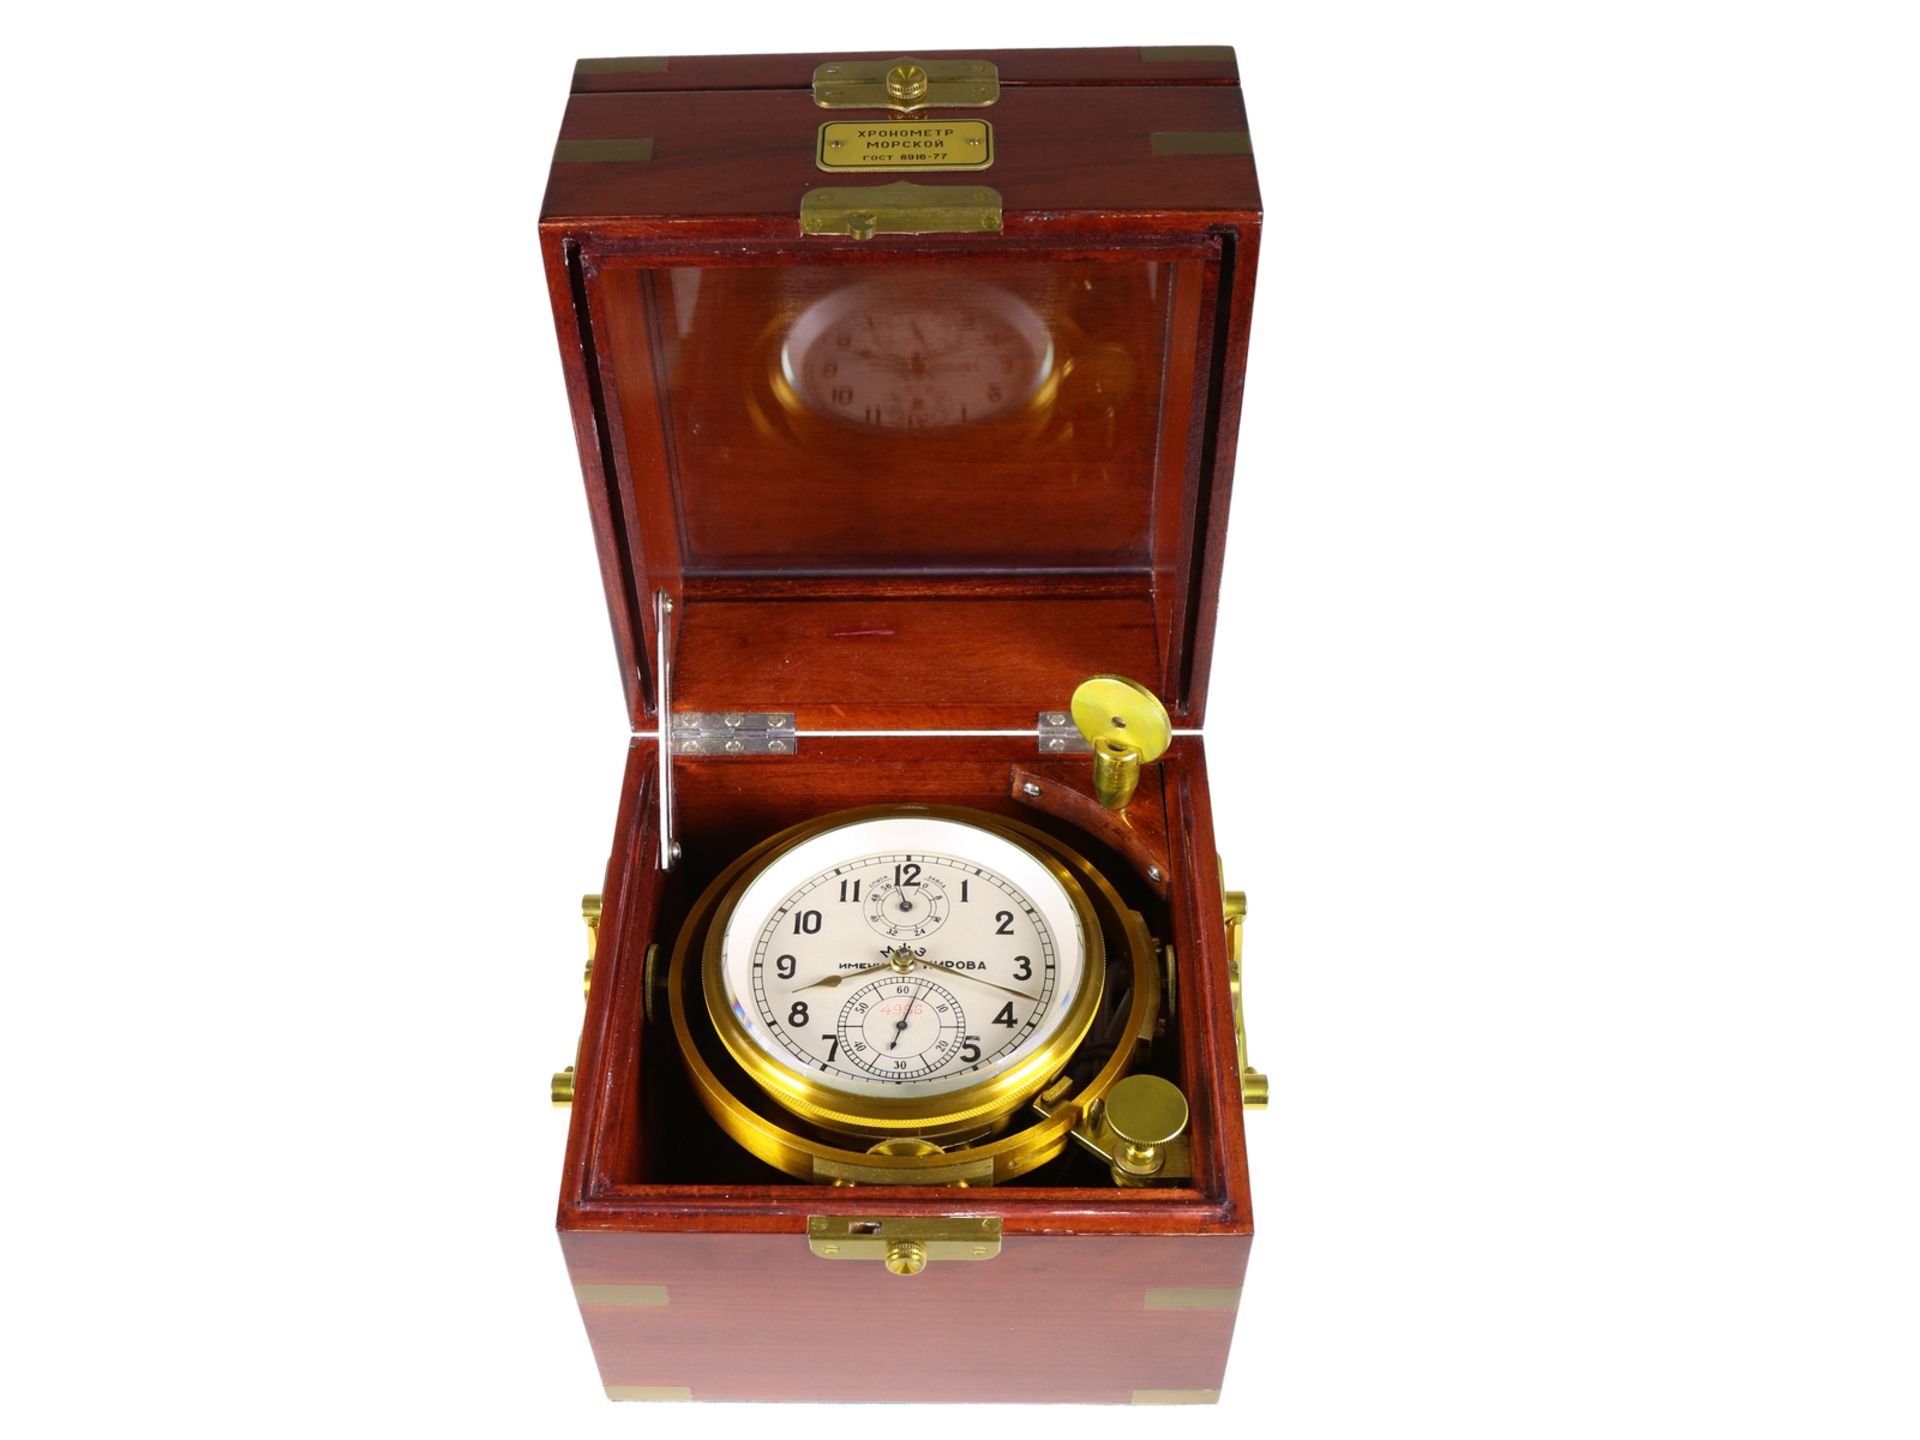 Marinechronometer: russisches Marinechronometer, seltener Originalzustand, Moskauer Uhrenfabrik Kiro - Image 4 of 4